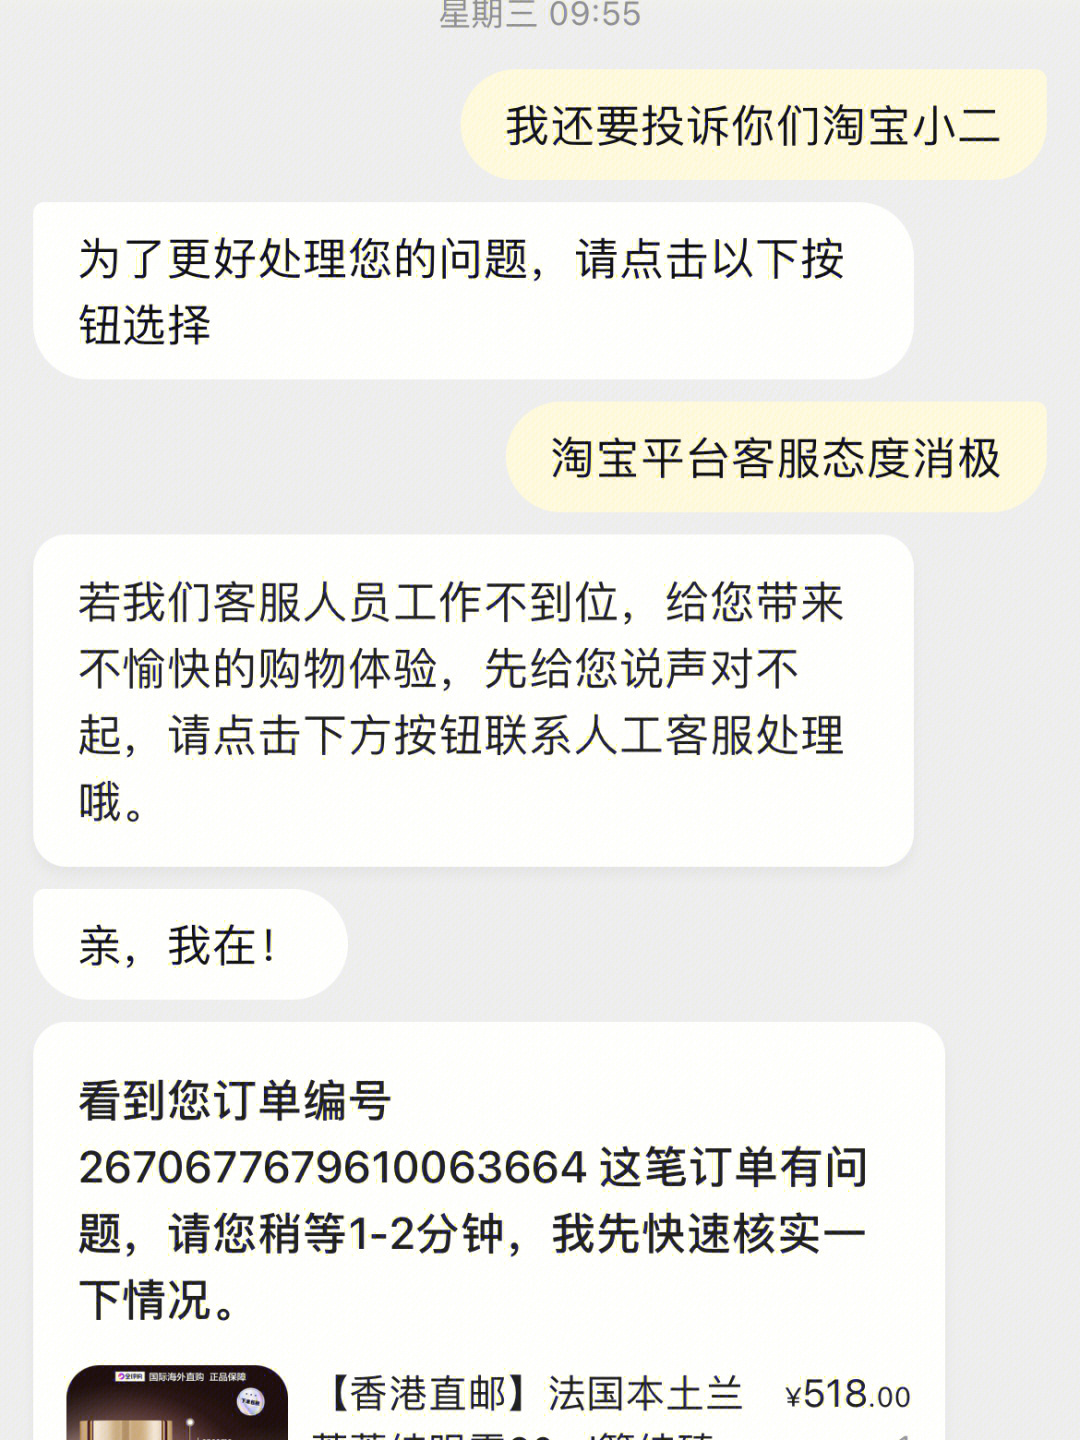 首先,我拨打了杭州12315的电话,对于淘宝包庇纵容的进行了投诉,杭州